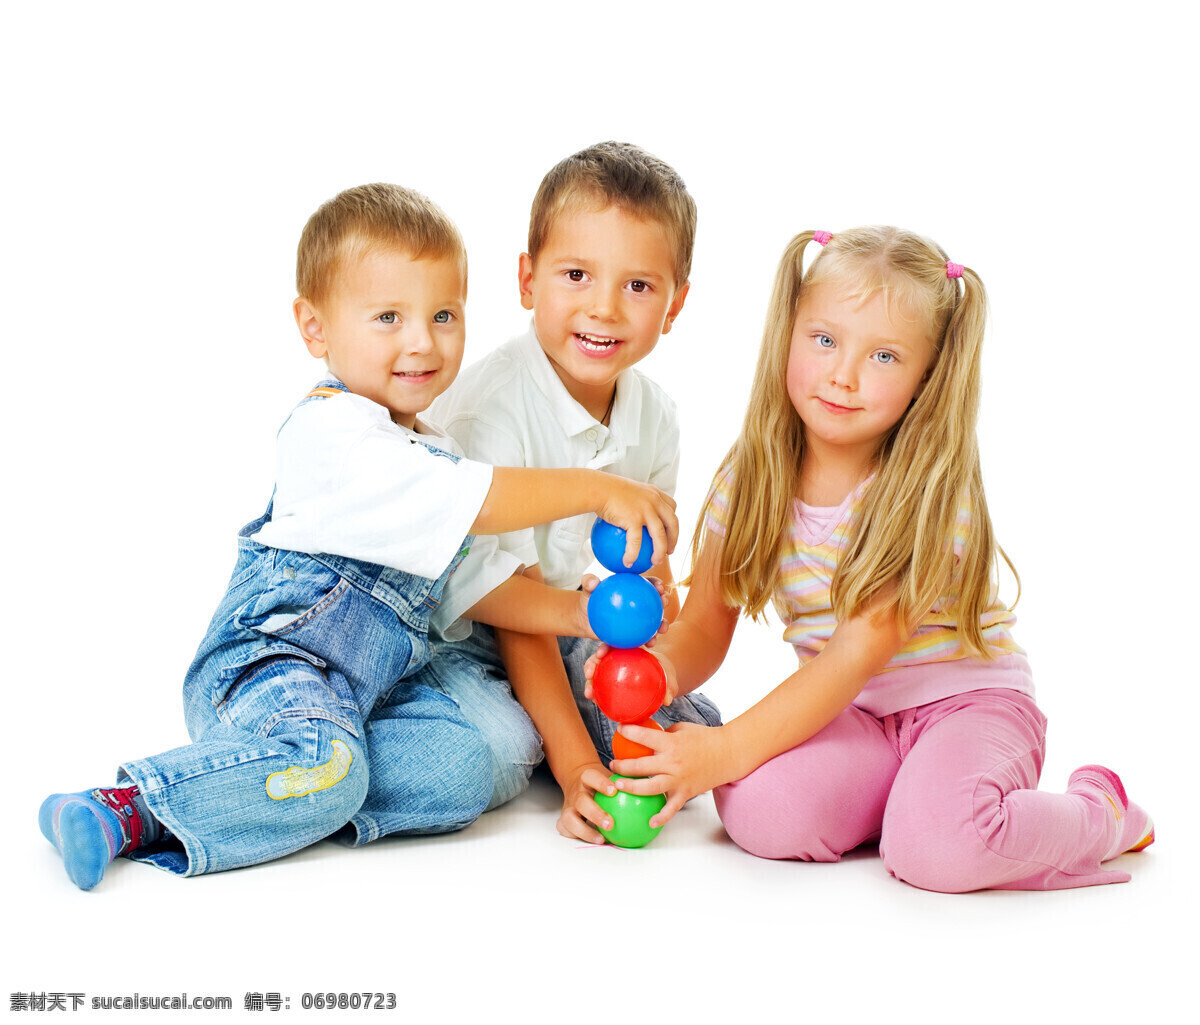 玩 玩具 三个 小朋友 家庭人物 外国儿童 孩子 儿童 小男孩 小女孩 玩耍 坐着 开心 微笑 温馨家庭 幸福 生活人物 人物图片